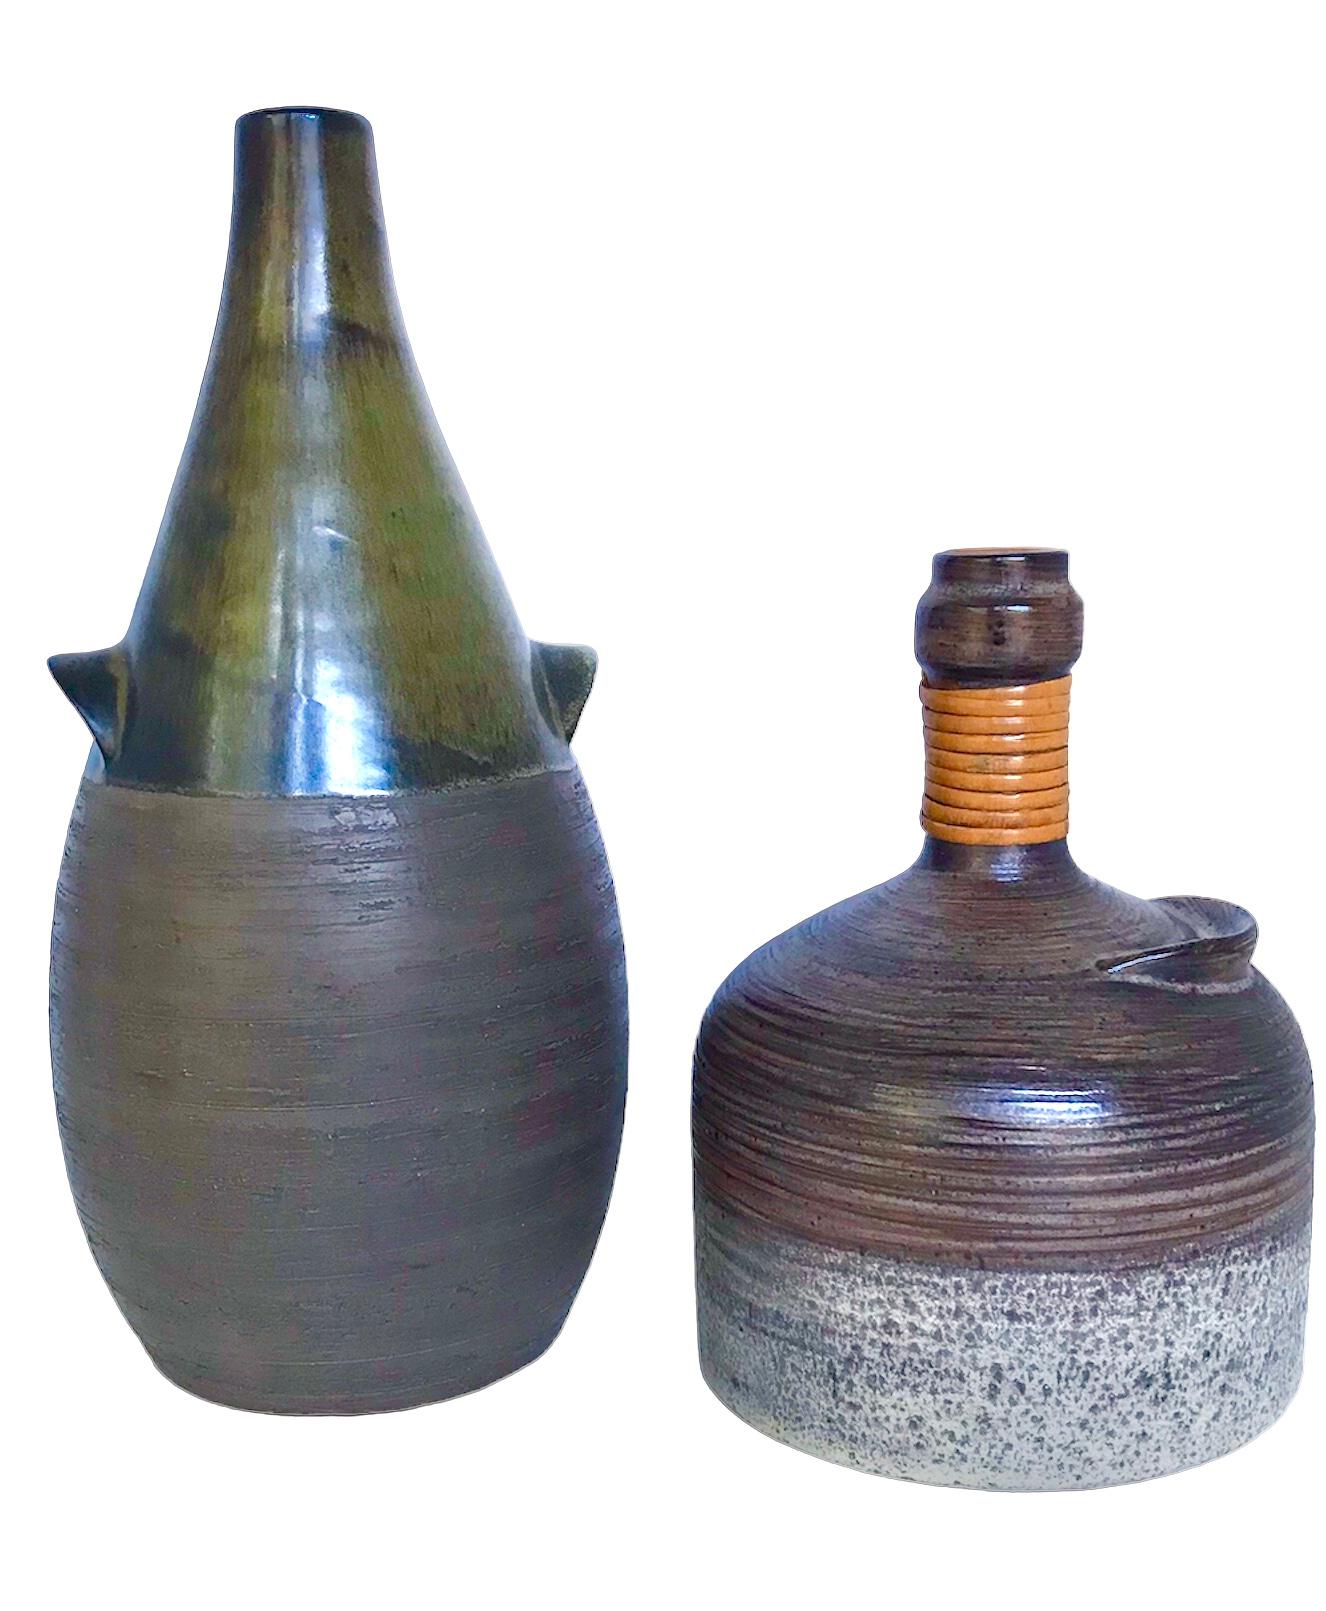 Ravissant récipient en poterie suédoise Organic Mid Century Modern créé par Thomas Hellstrom pour Nittsjö.  Vase en forme de cruche, avec une glaçure brune brillante sur le dessus et un fond blanc cassé tacheté.  L'ensemble de la surface est